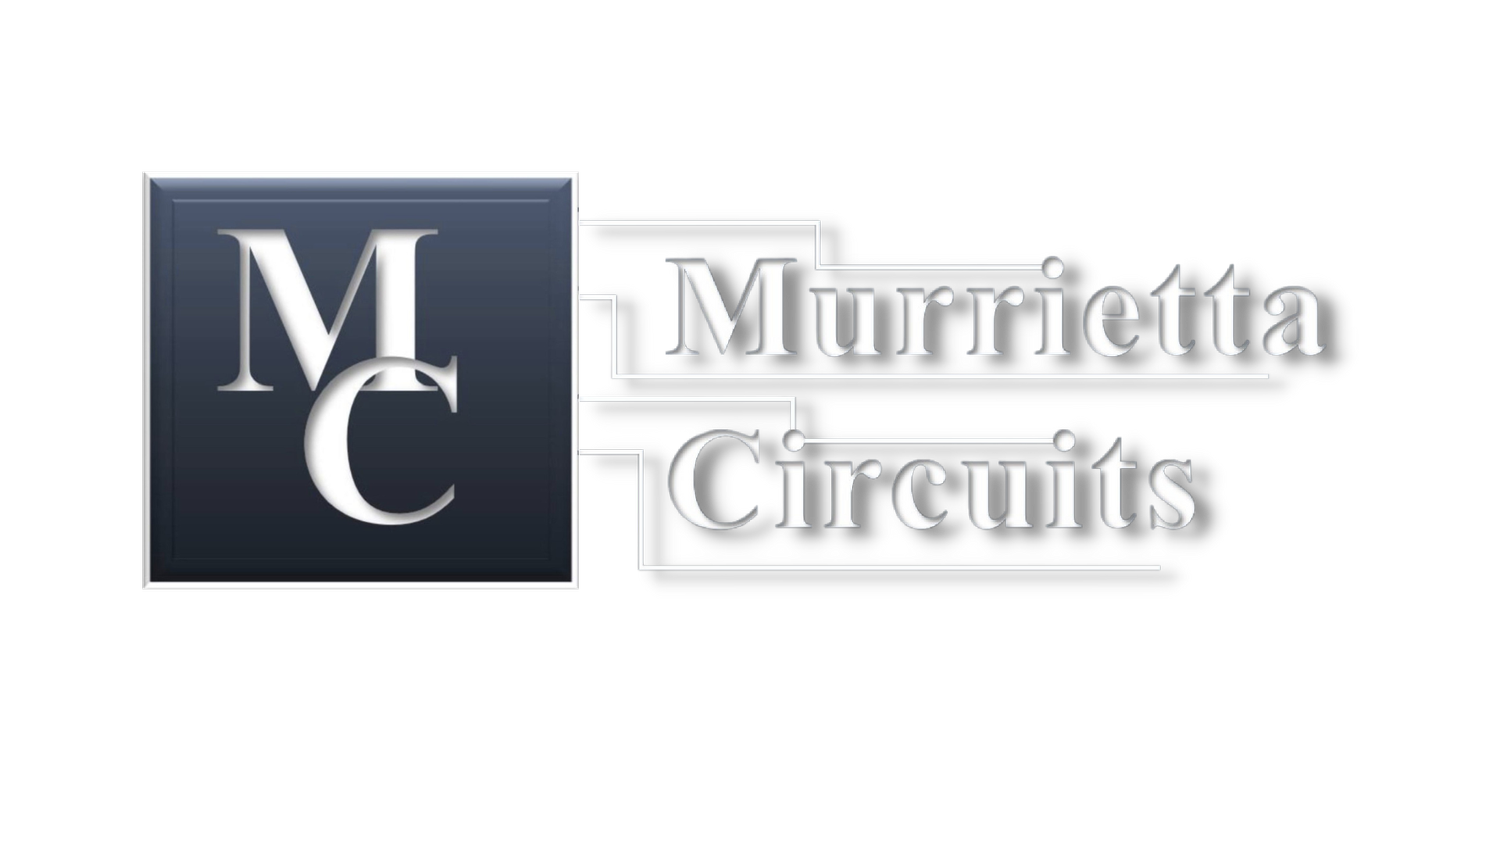 Murrietta Circuits